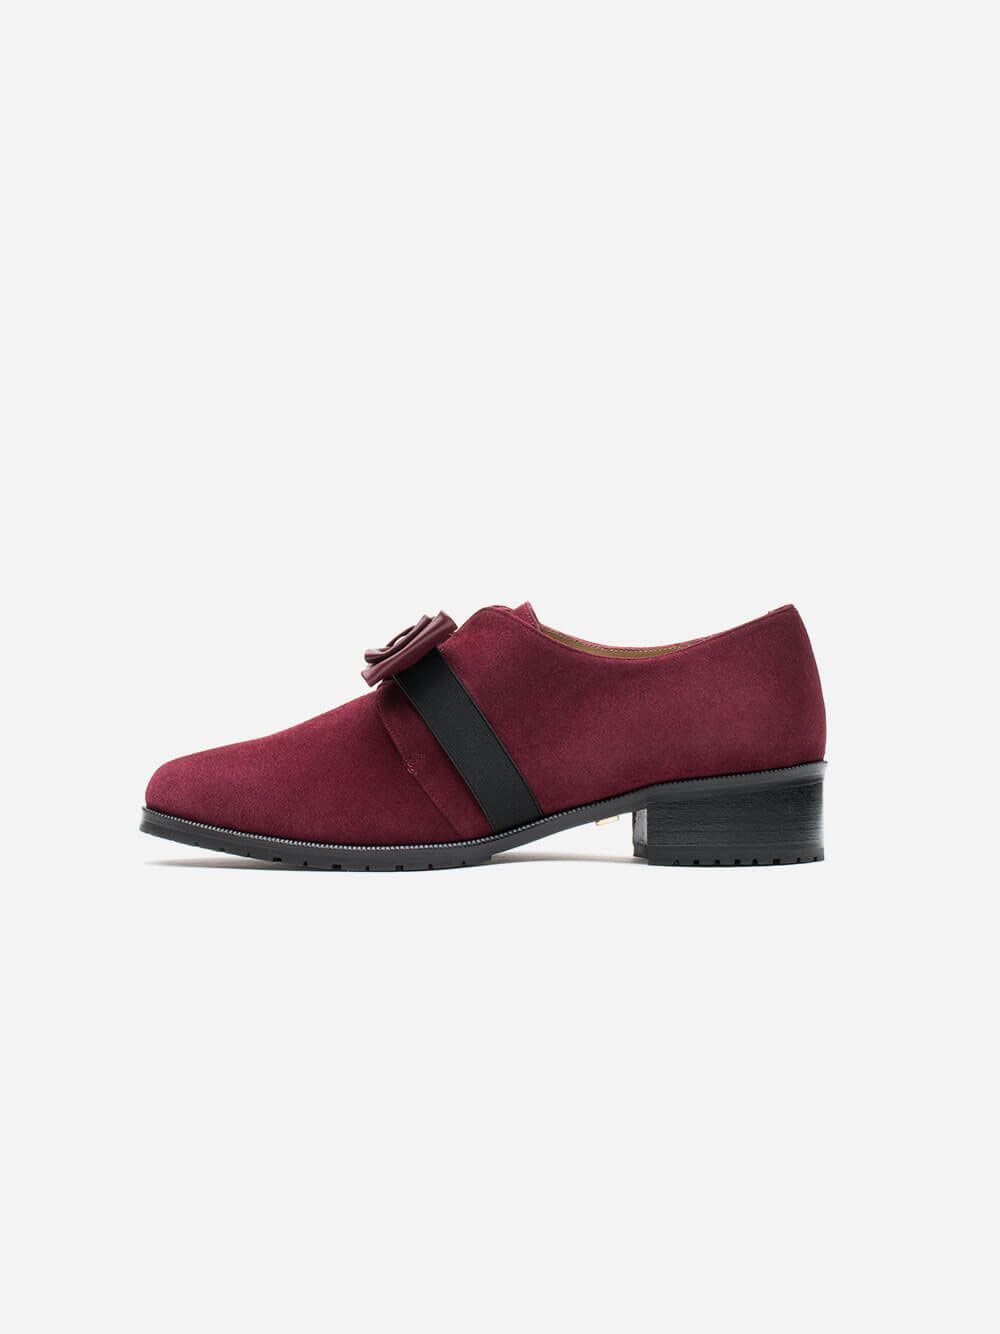 Sweetbow Bordeaux Shoes | Officina Lisboa